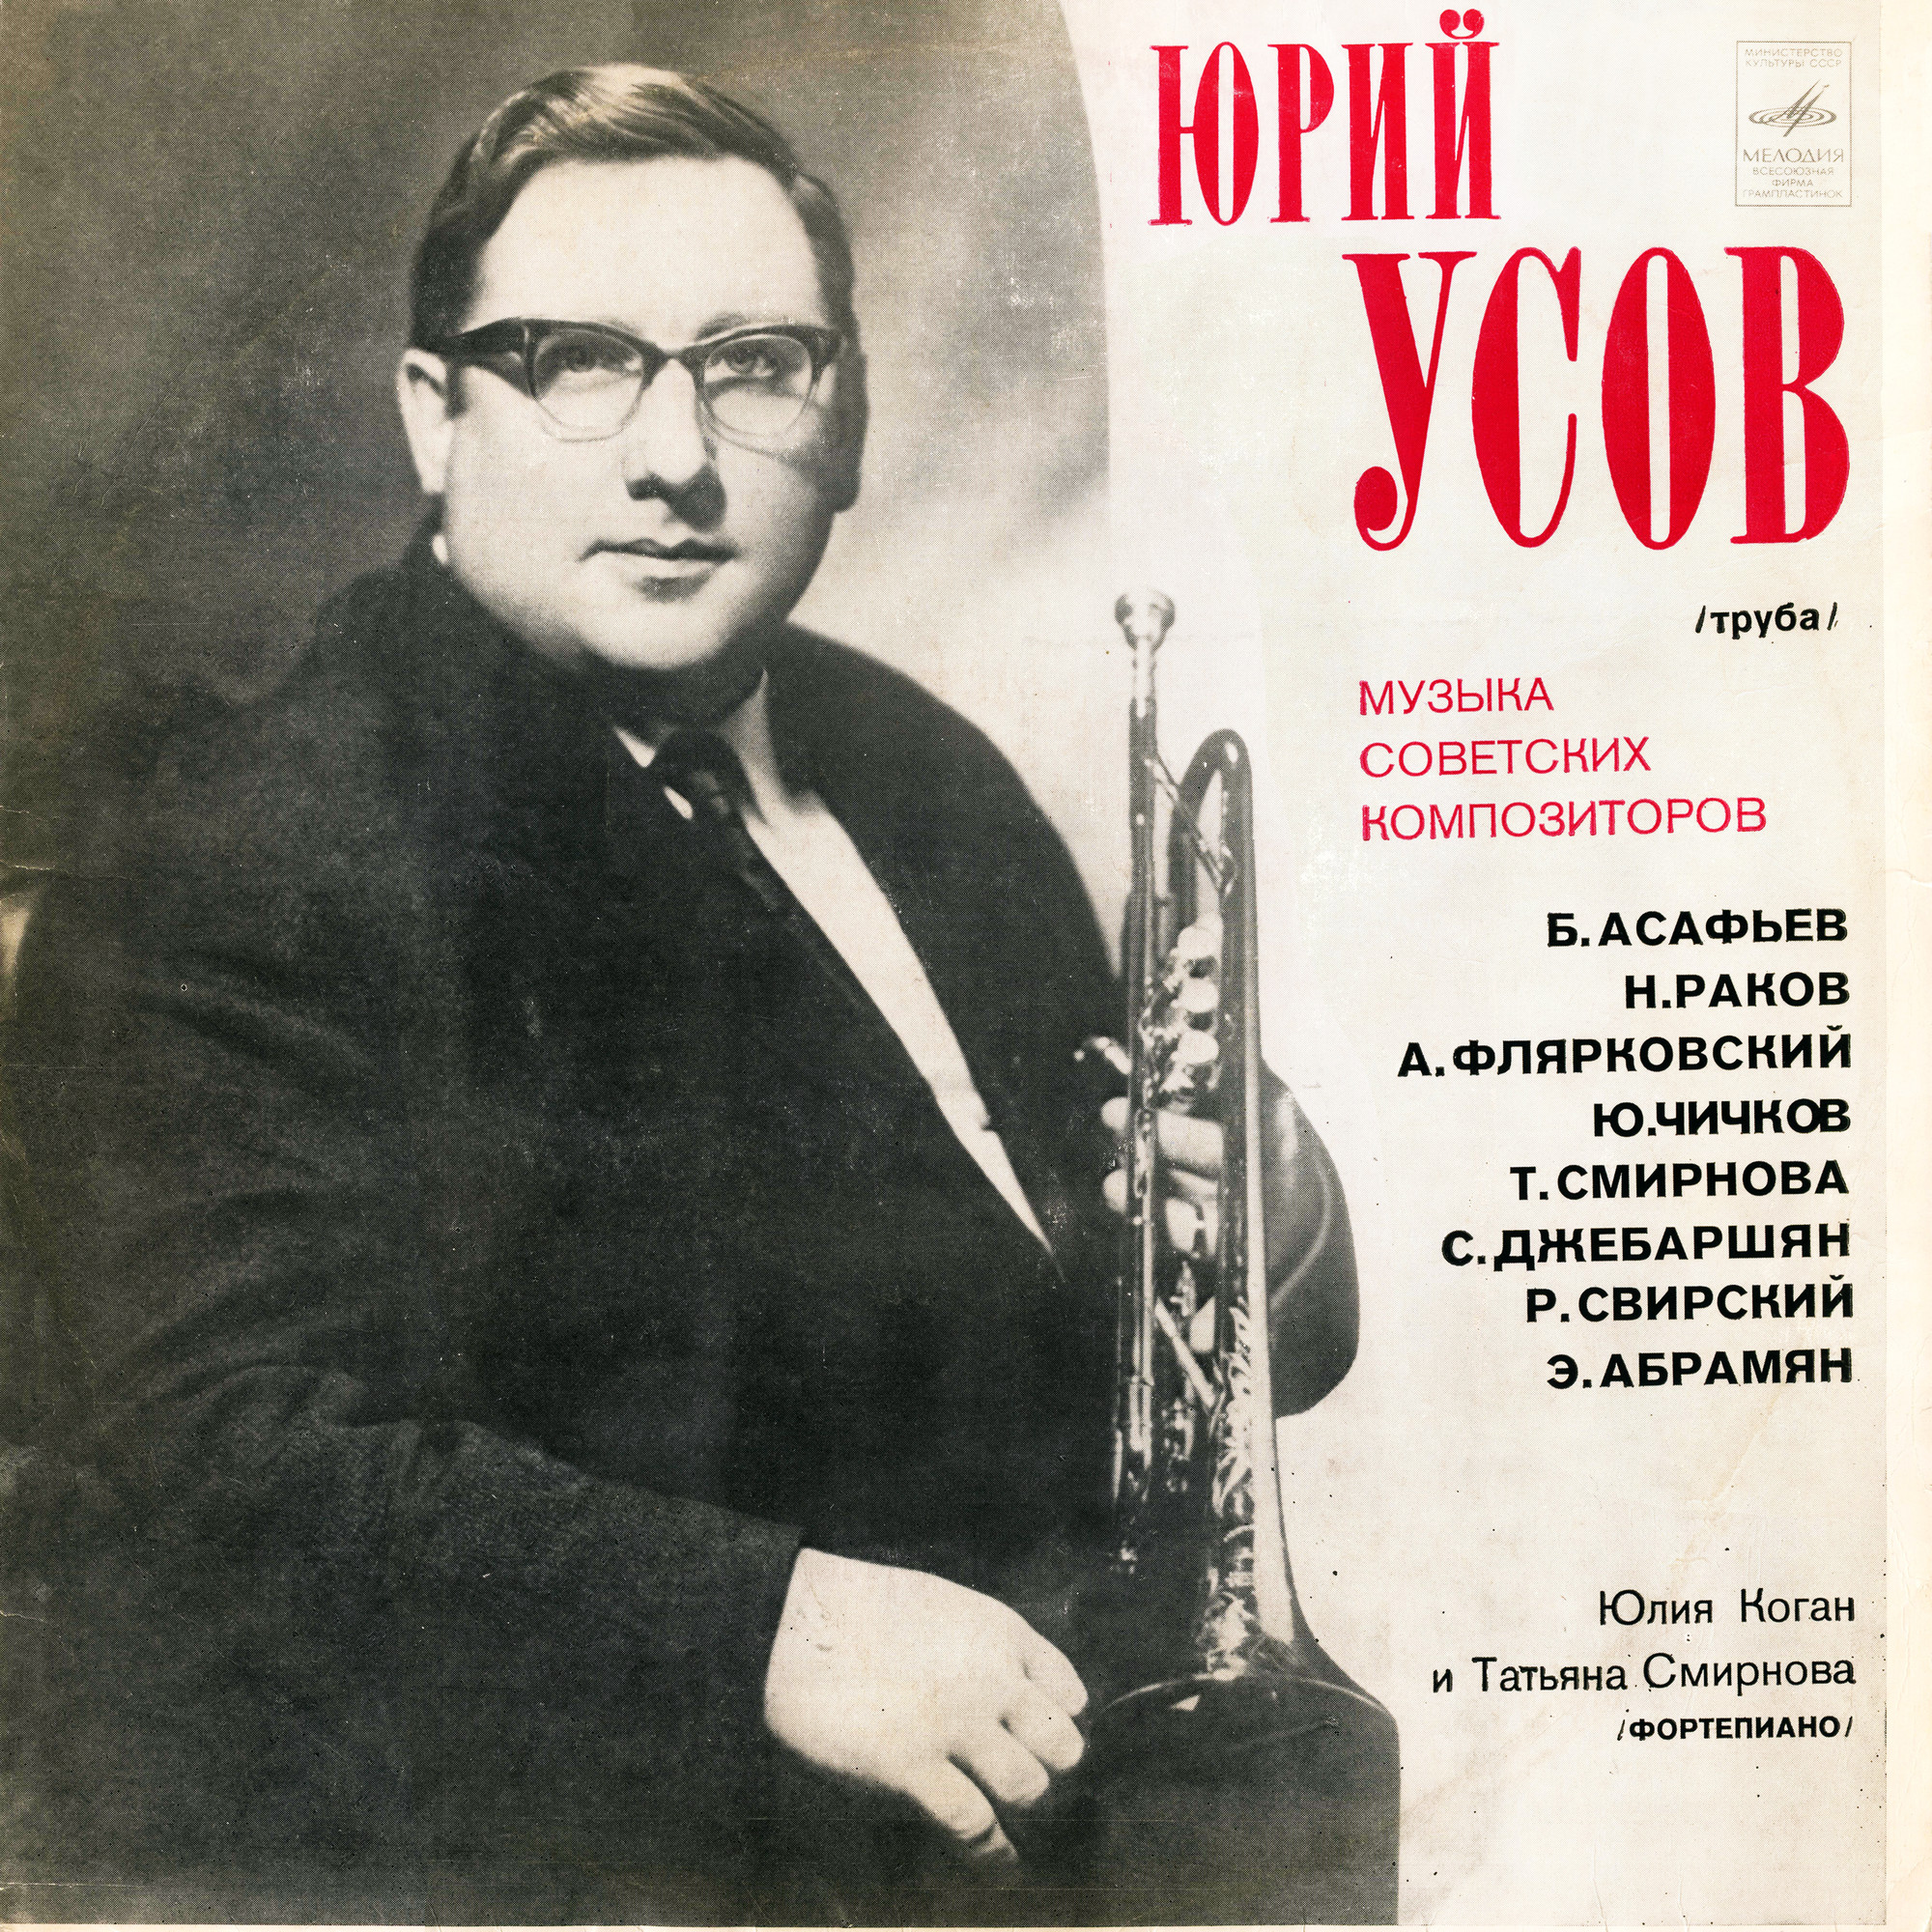 Юрий УСОВ (труба). Музыка советских композиторов